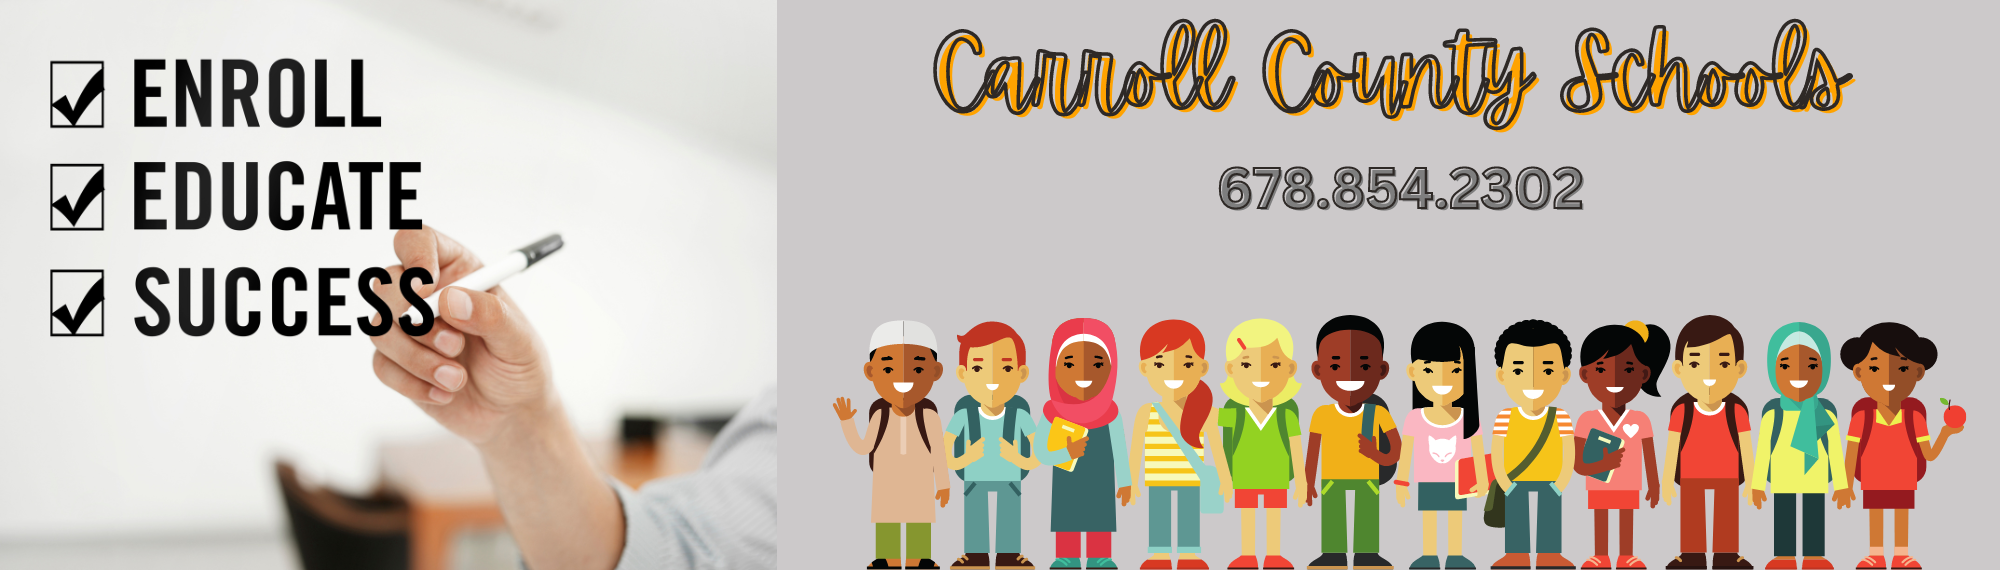 Carroll County Schools Enrollment Phone Number